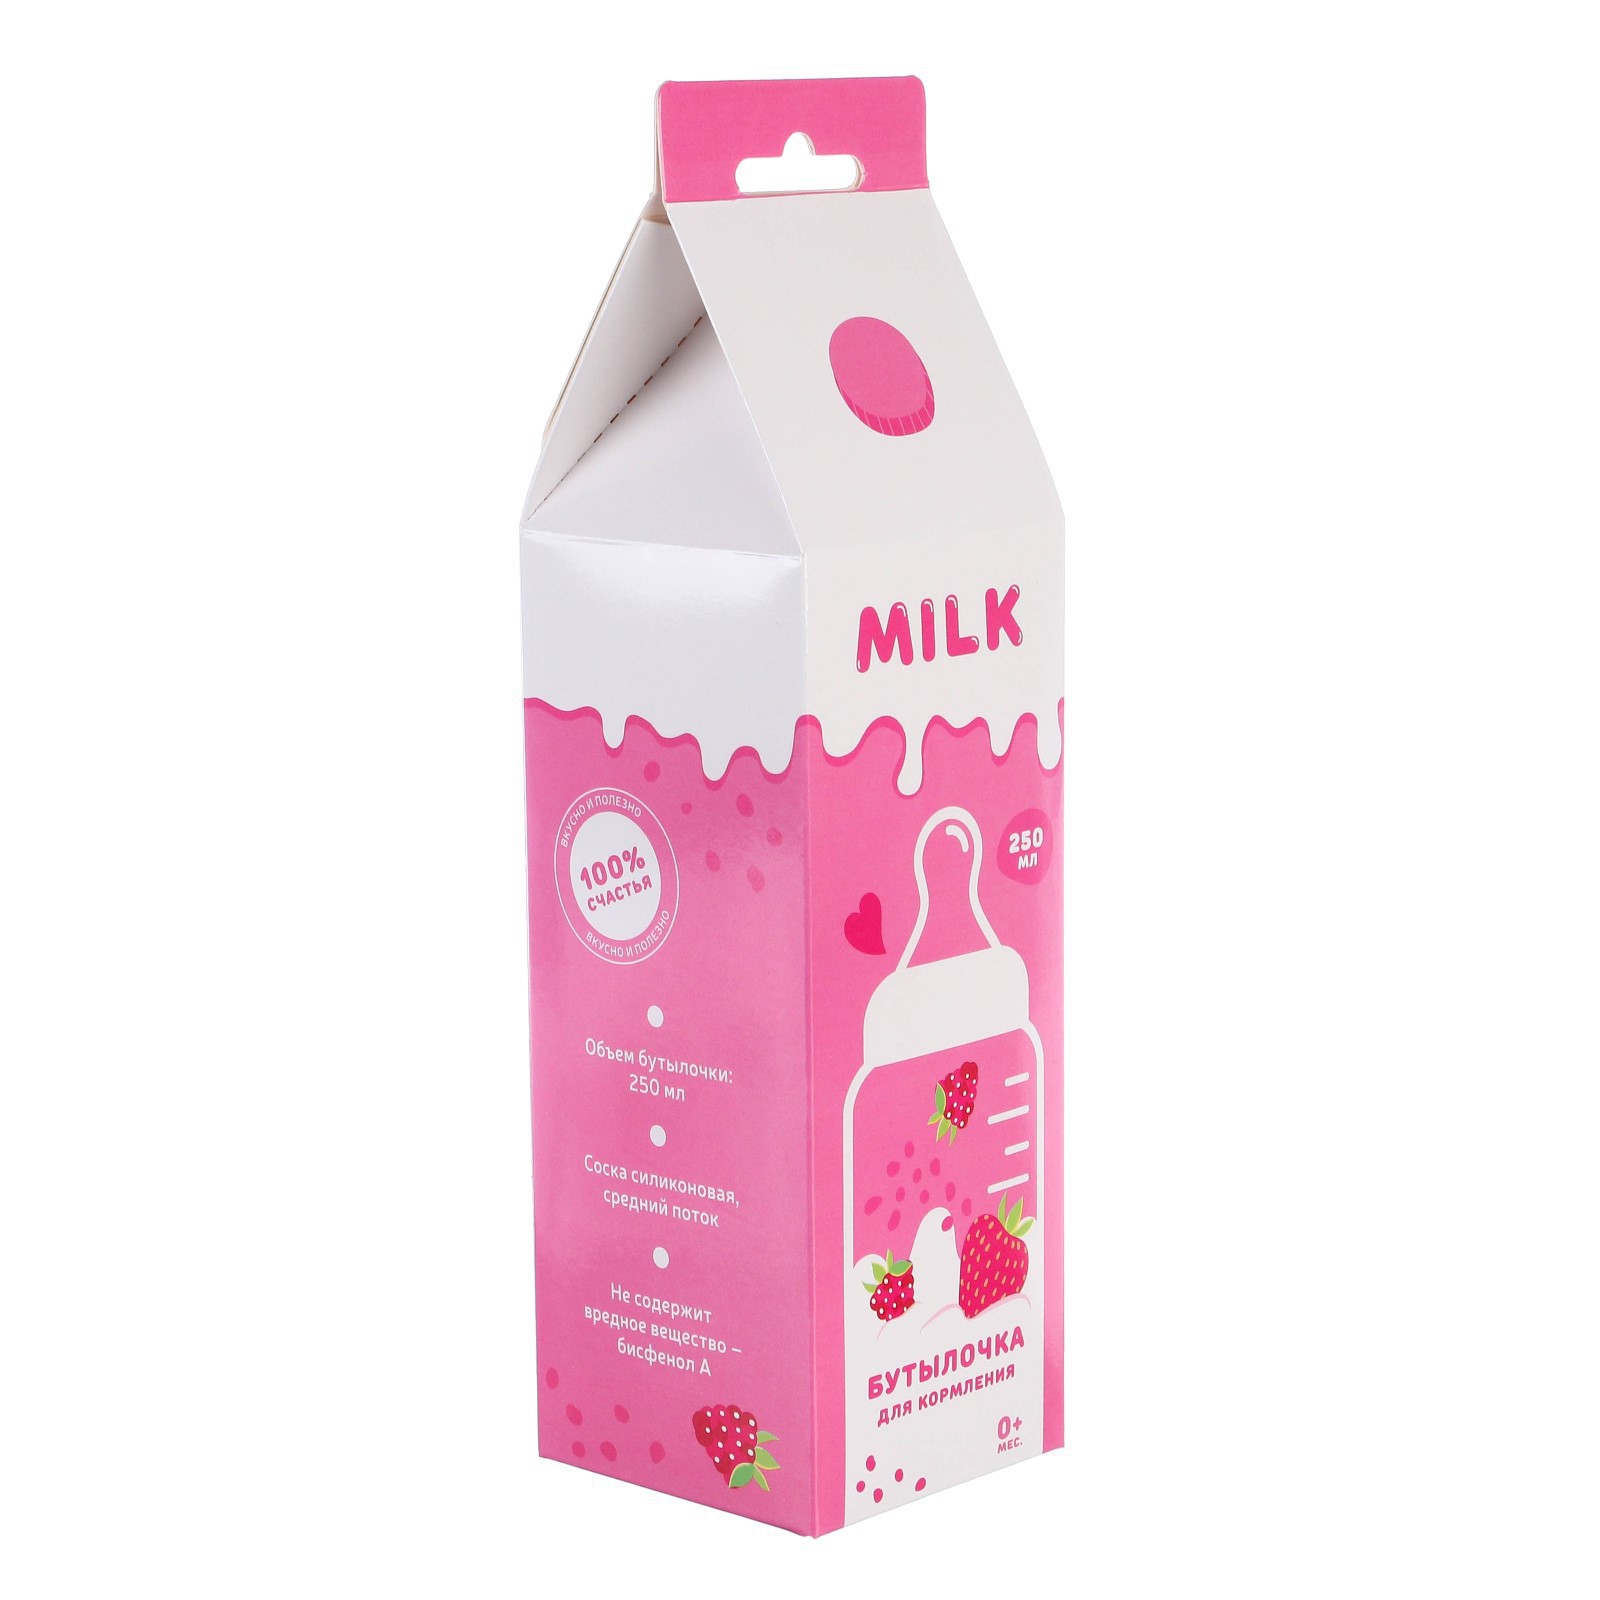 Бутылочка Mum and Baby для кормления подарочная «Клубничное молоко» 250 мл. с соской с ручками - фото 8